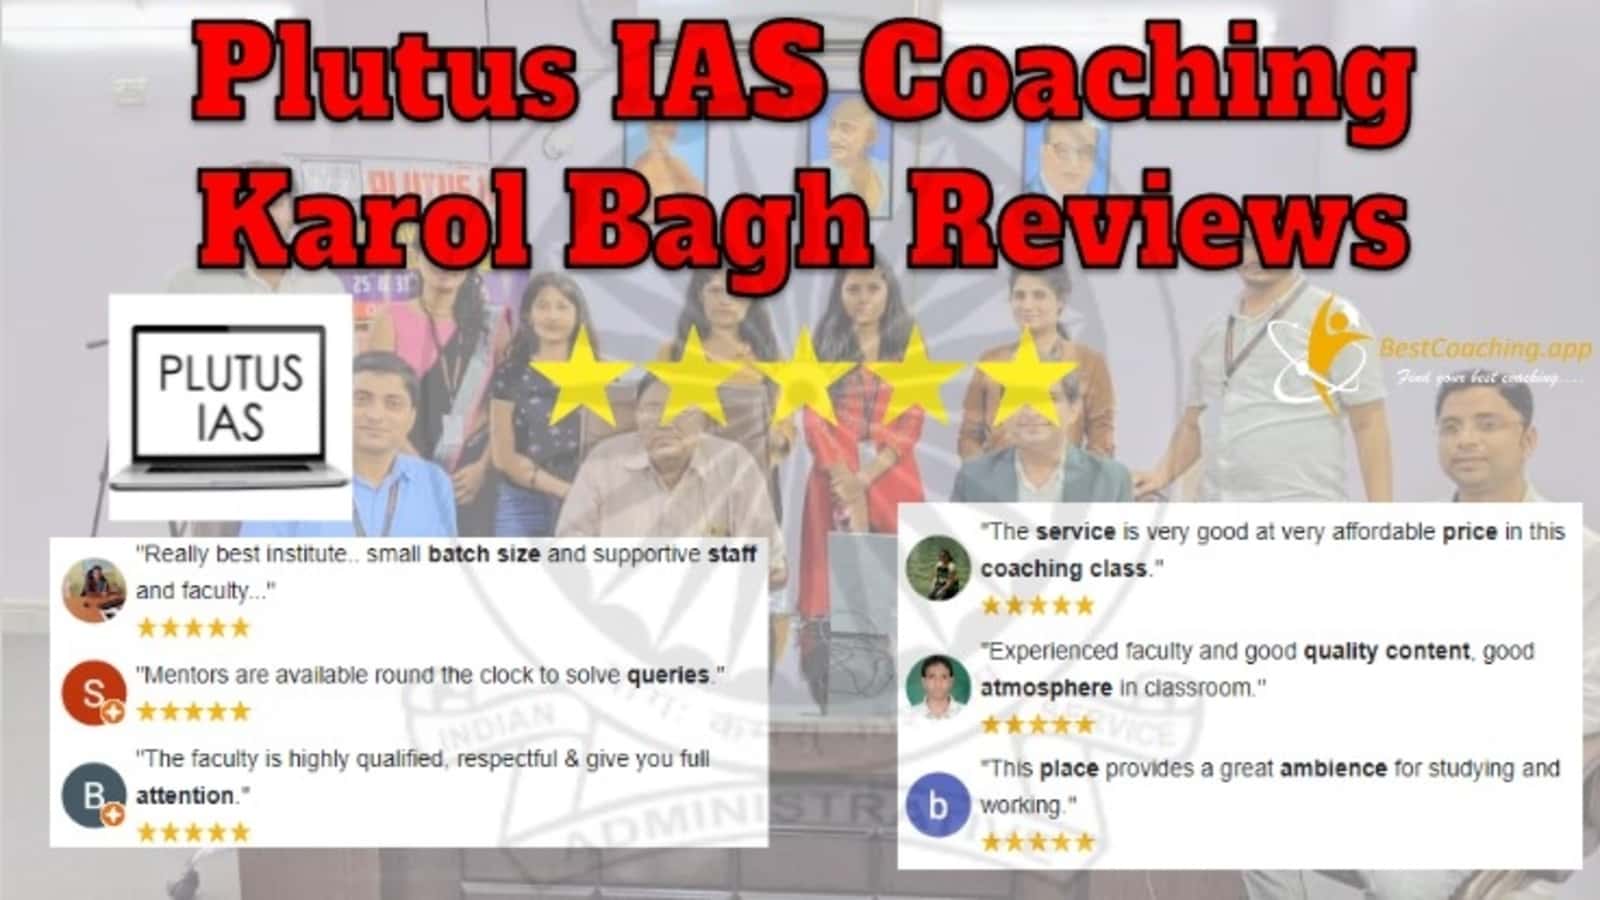 Plutus IAS Coaching in Karol Bagh Reviews